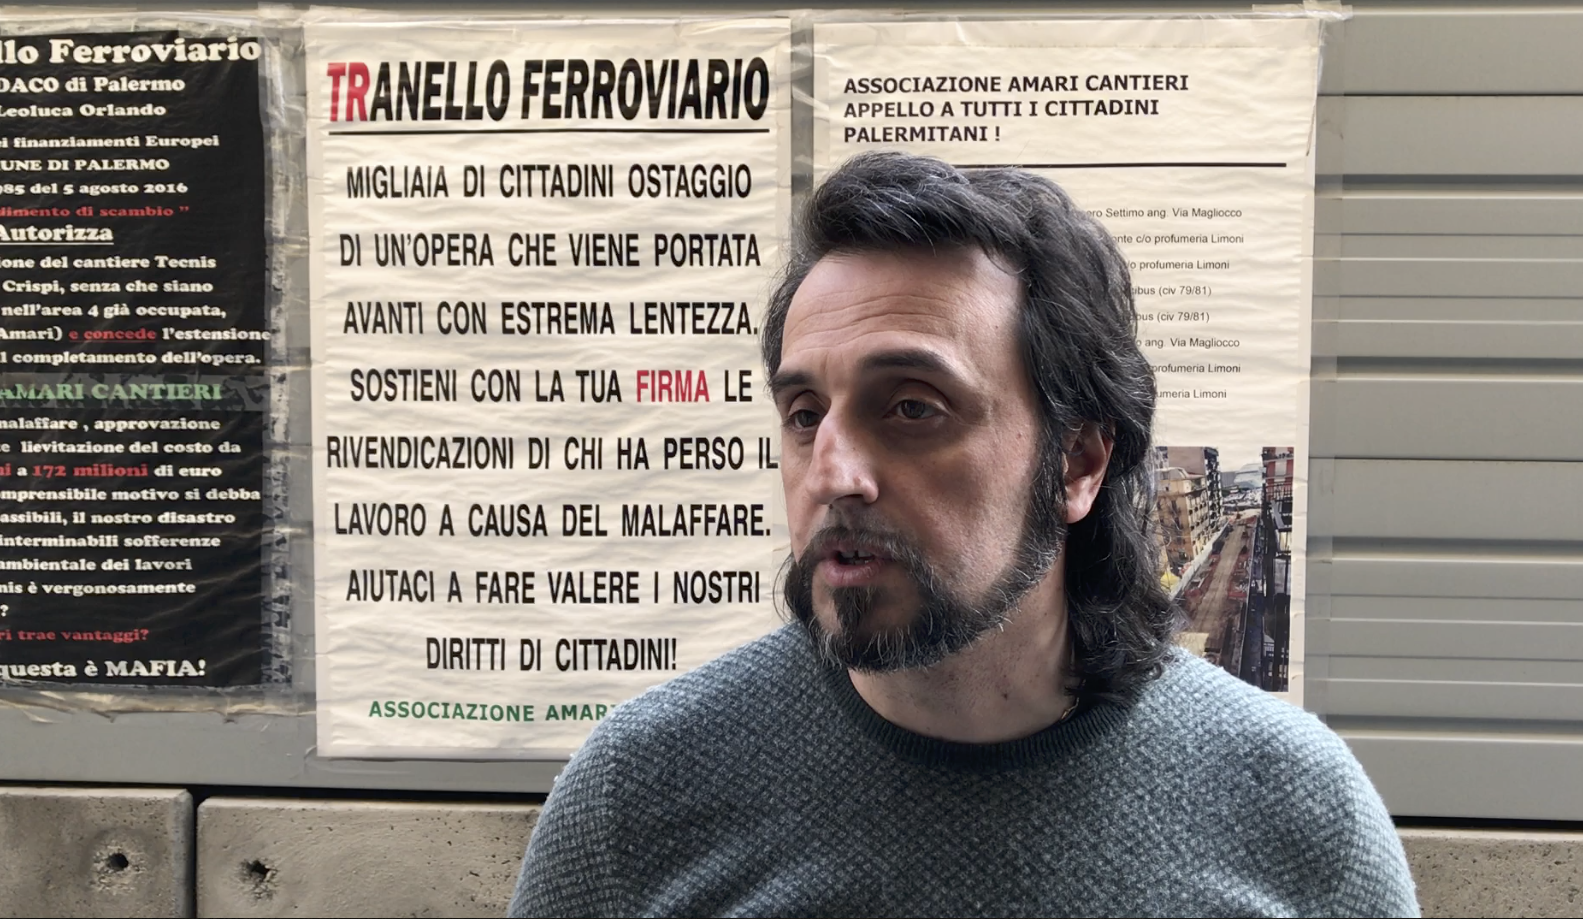 Francesco Raffa, presidente del comitato "Amari cantieri"